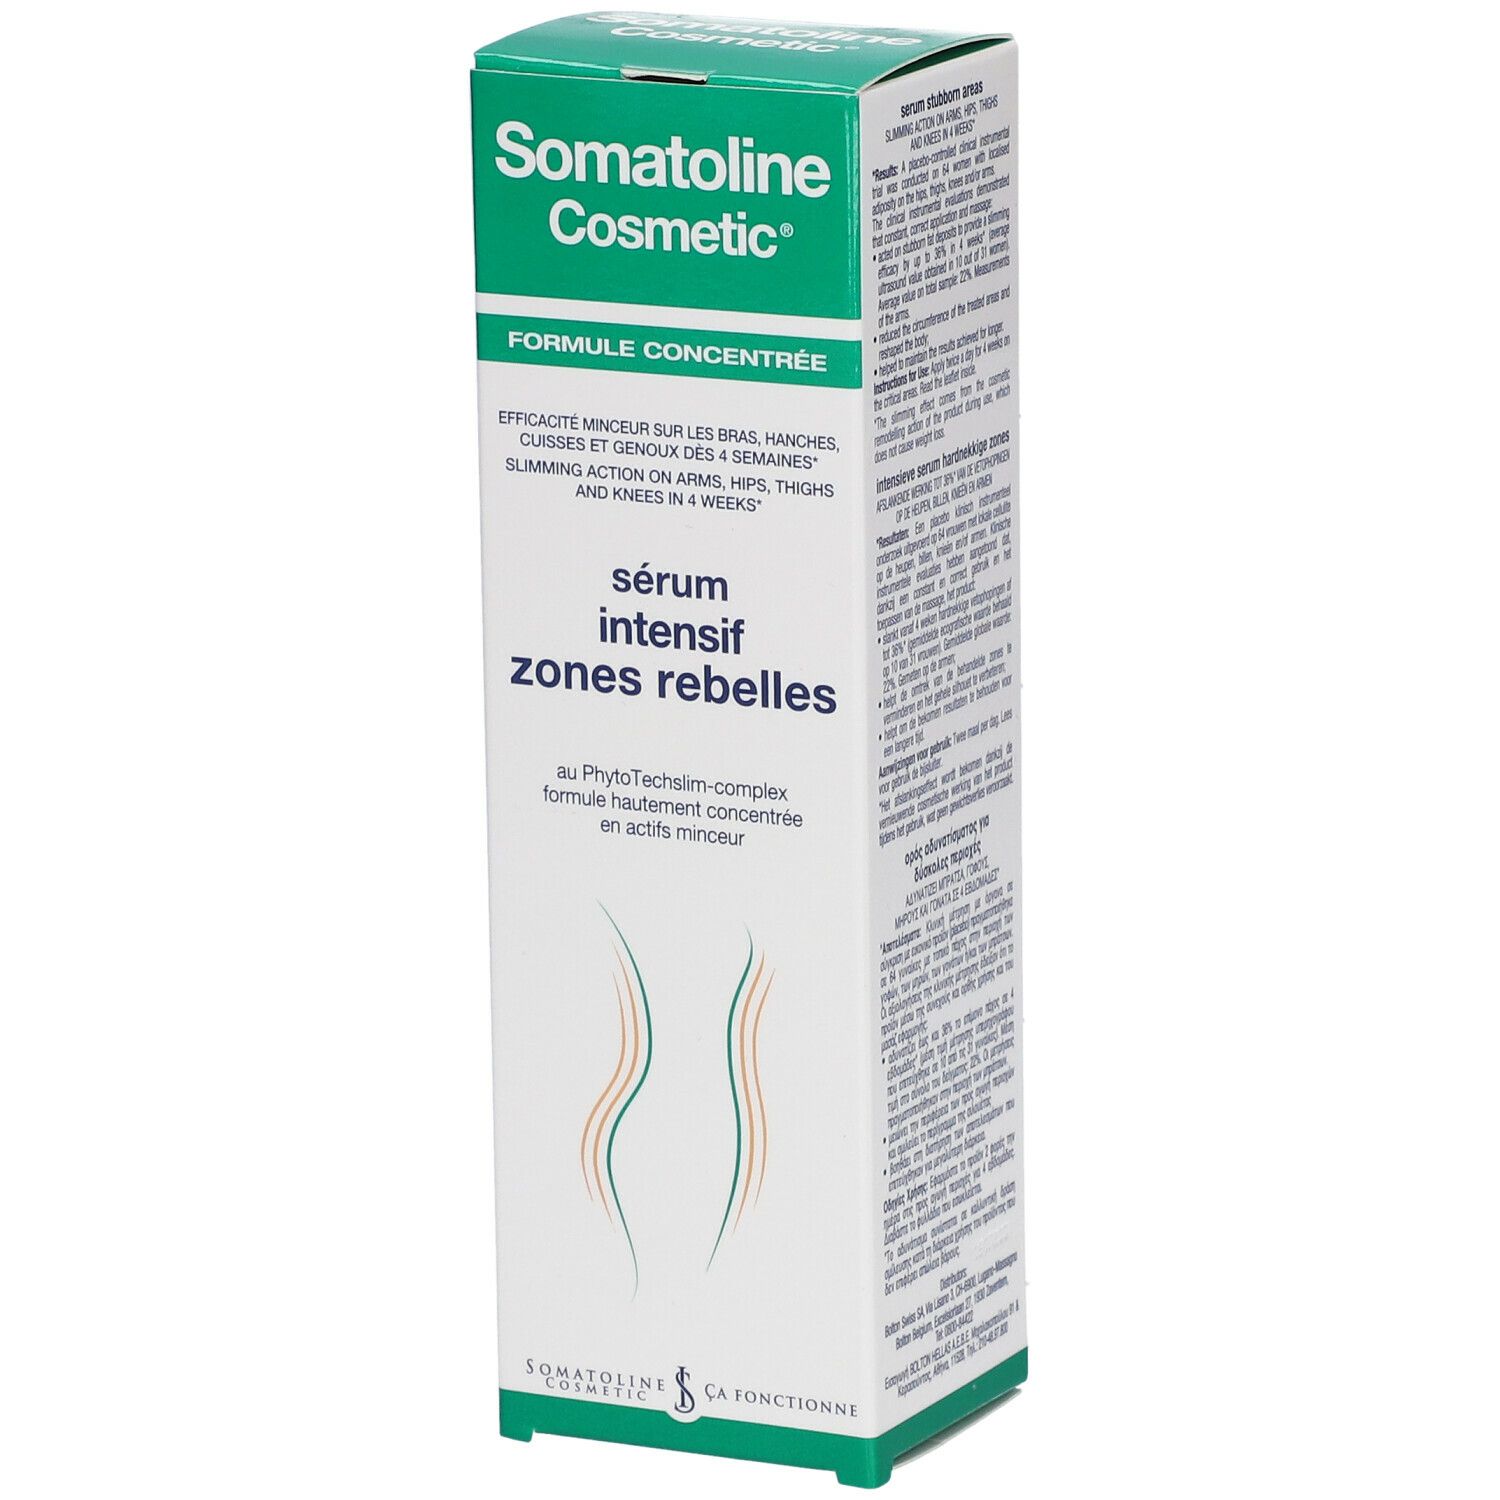 Somatoline Cosmetic Somatoline Comsmetic ® Intensiv Serum bei Problemzonen